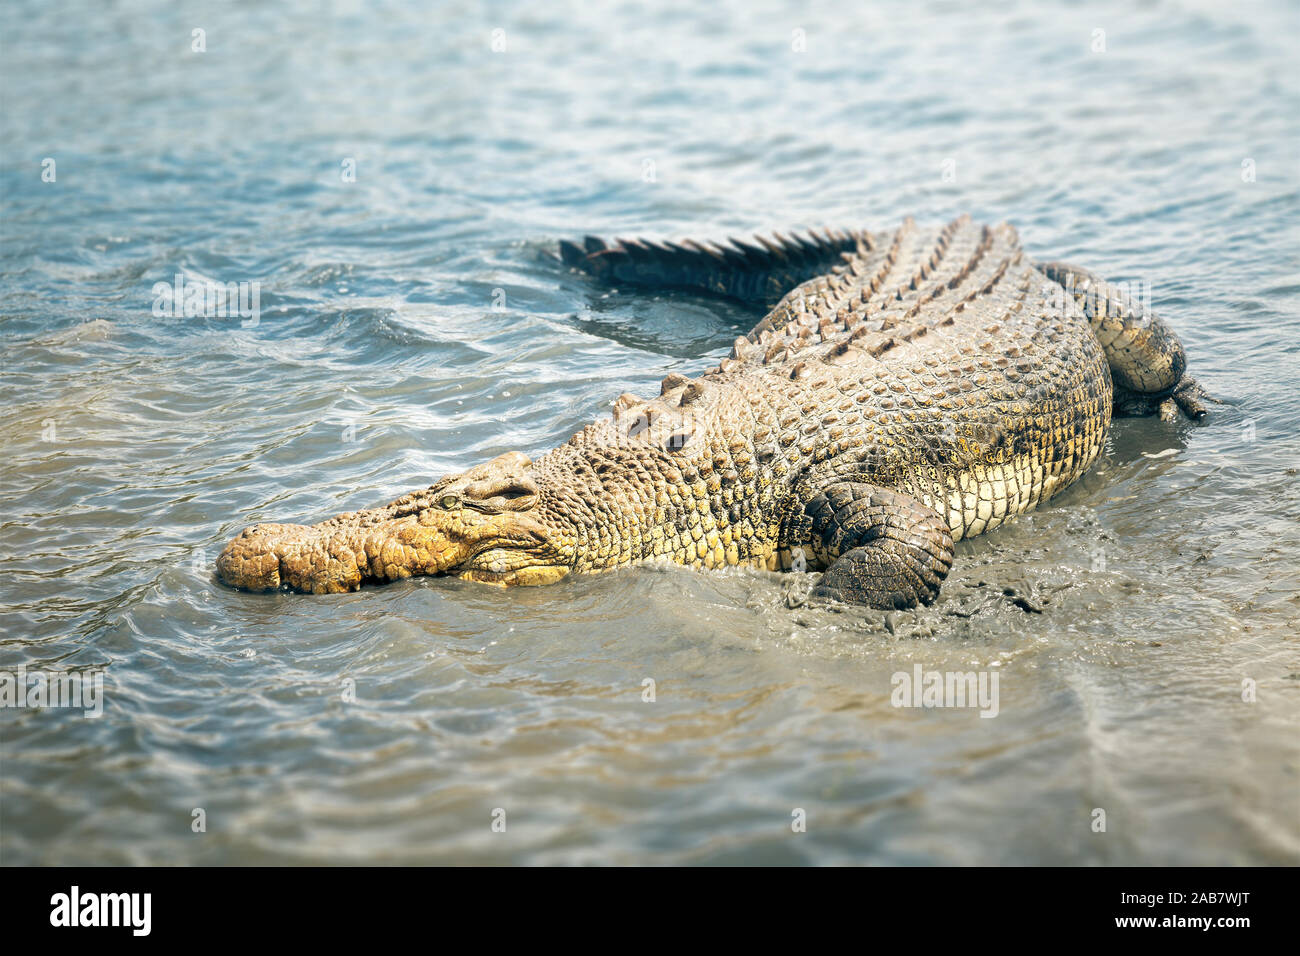 Ein grosses australisches Krokodil im Wasser Stock Photo